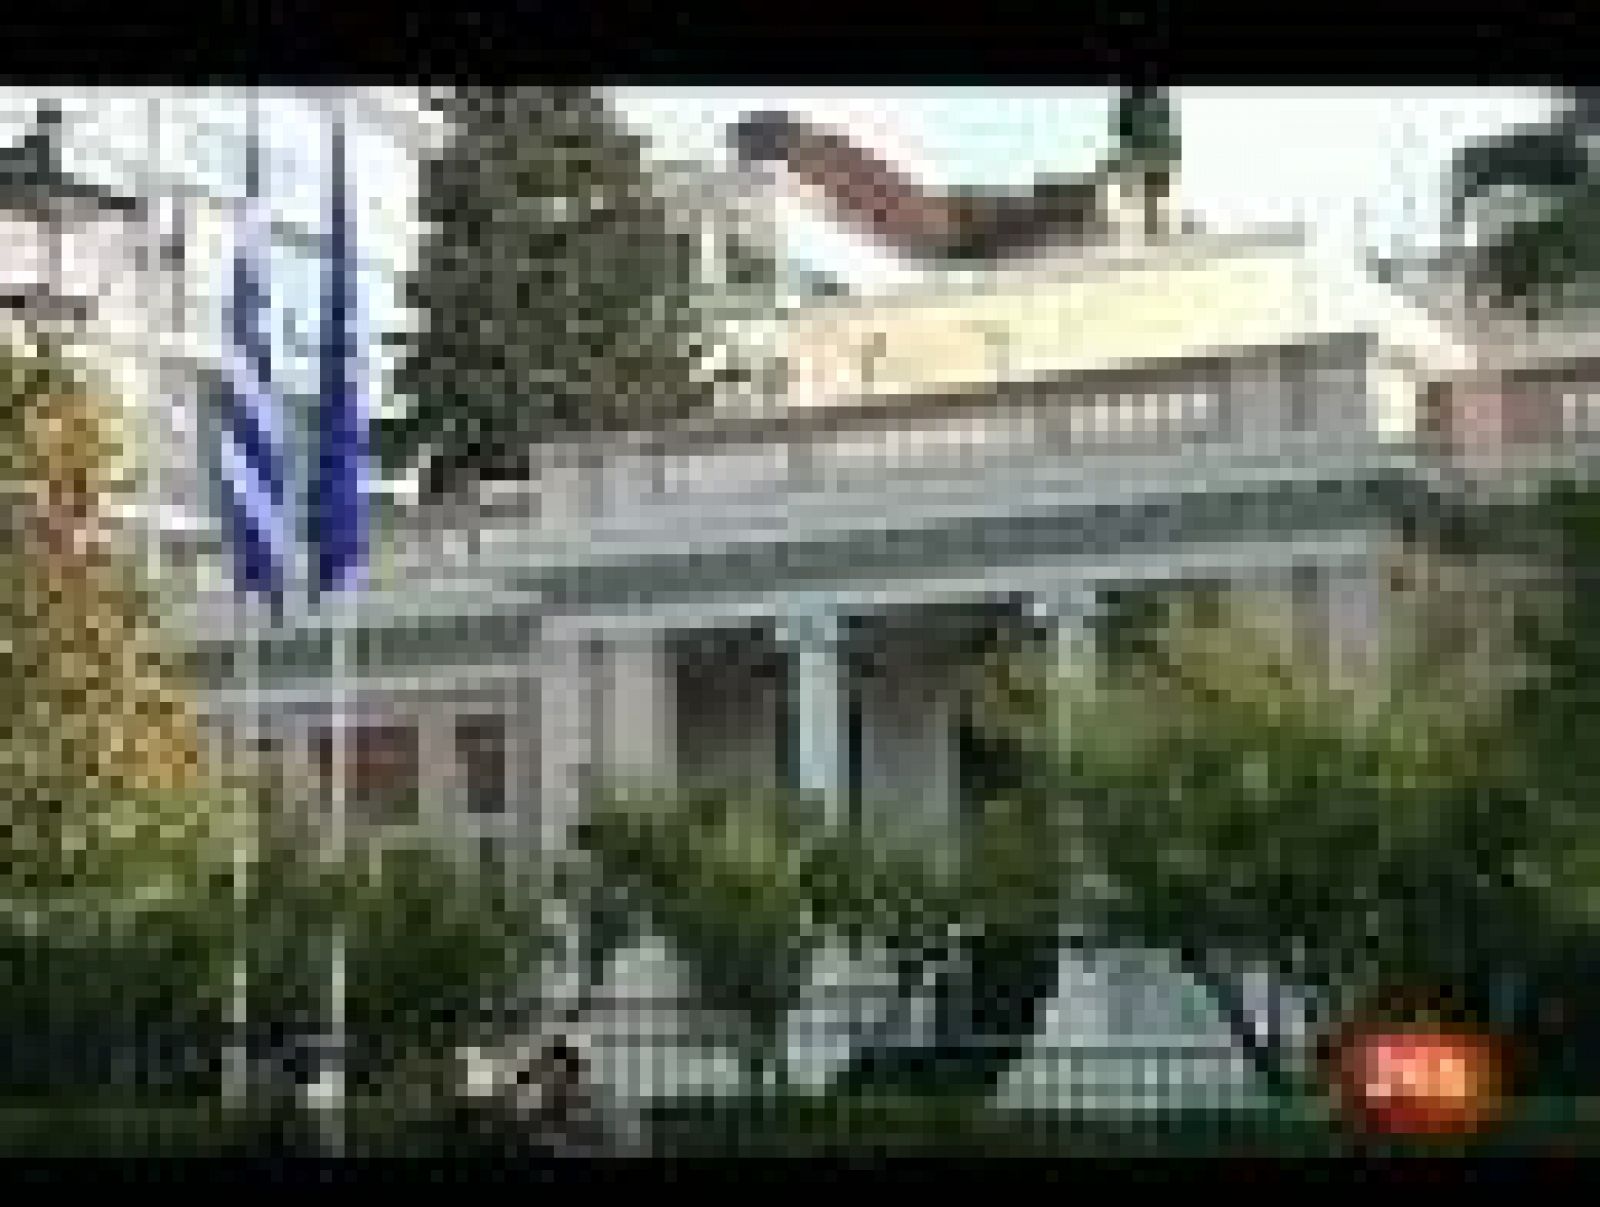 Continúan las negociaciones sobre la deuda griega pese a irse el jefe del IIF